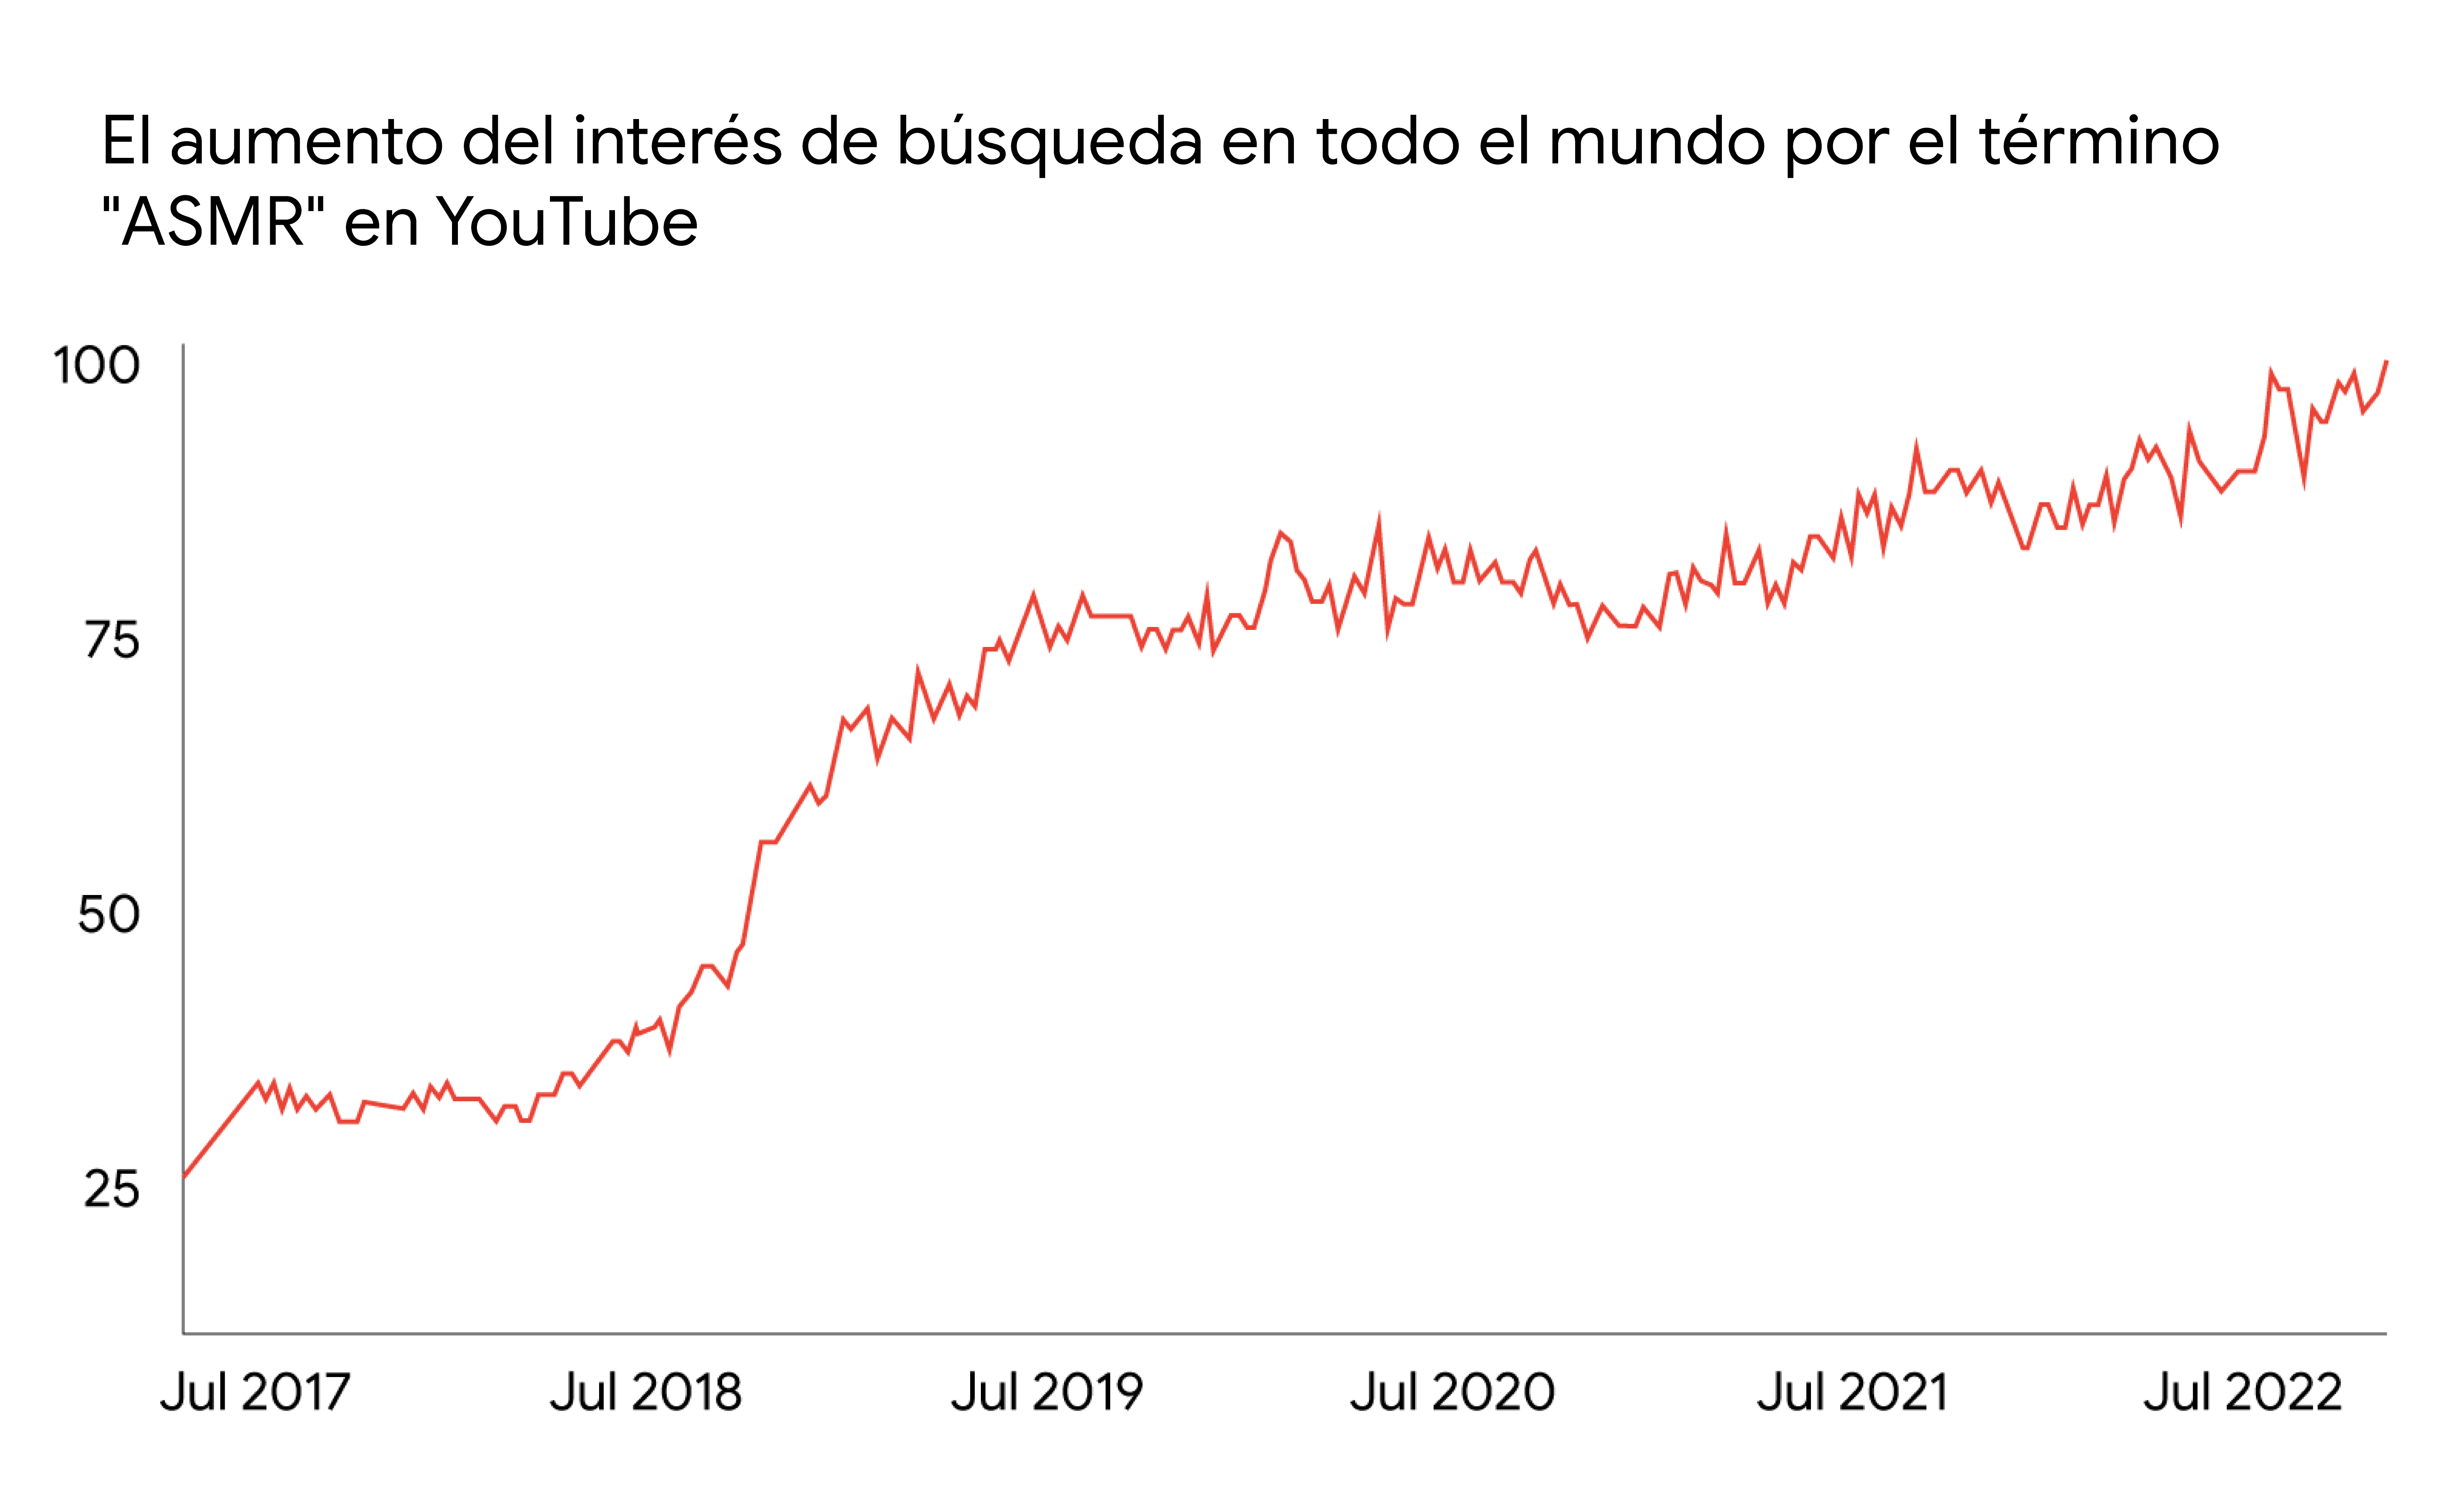 Un gráfico de líneas muestra el aumento del interés de búsqueda en todo el mundo por el término “ASMR” en YouTube, entre julio de 2017 y julio de 2022.